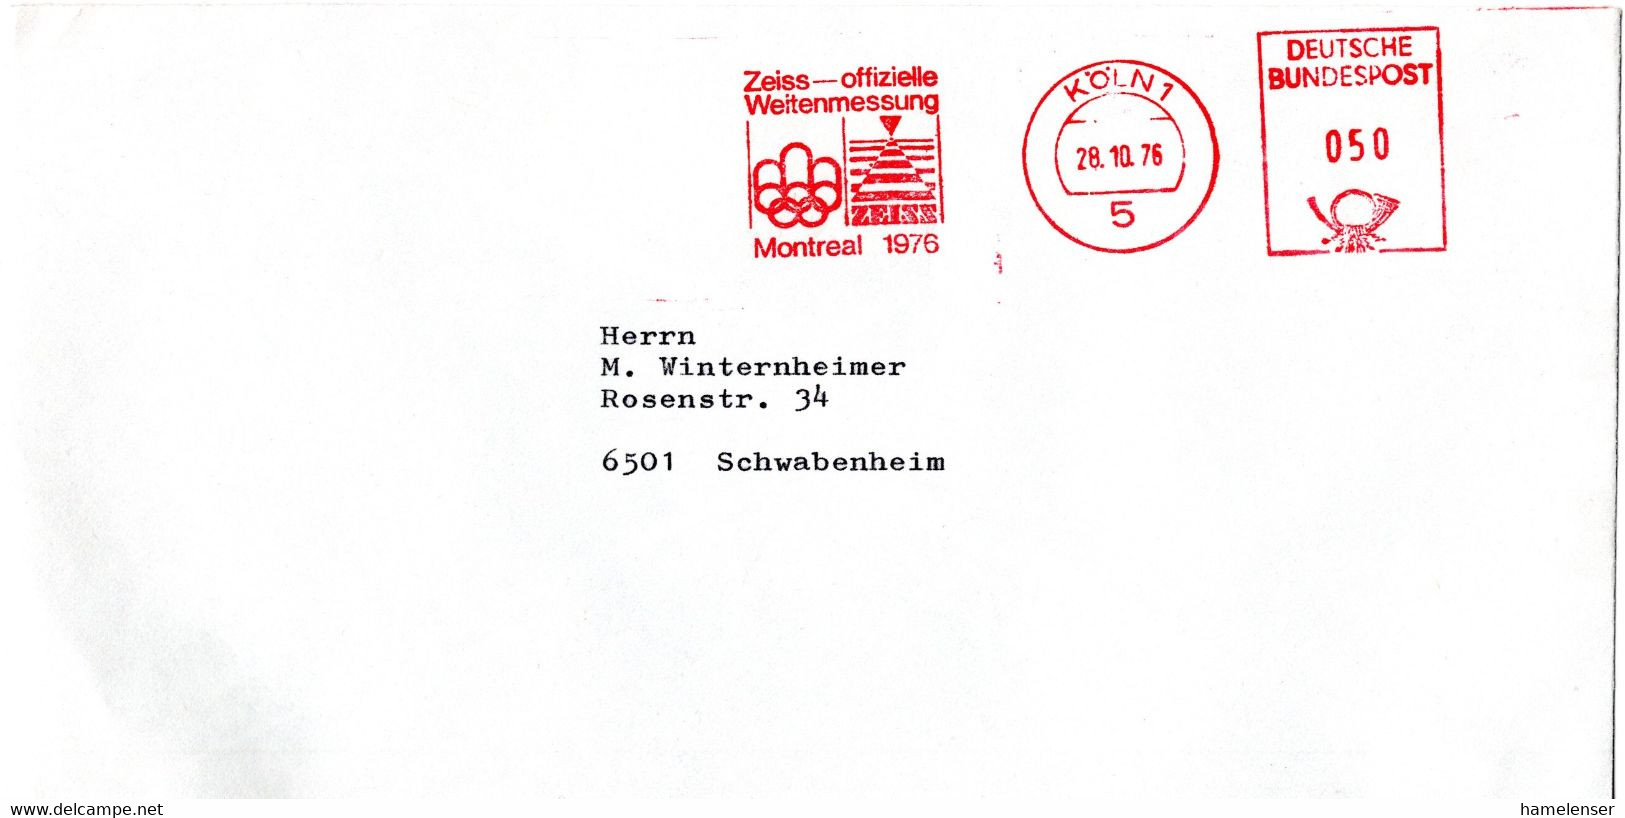 L56465 - Bund - 1976 - 50Pfg AbsFreistpl A Bf KOELN - ZEISS OFFIZIELLE WEITENMESSUNG MONTREAL 1976 -> Schwabenheim - Estate 1976: Montreal